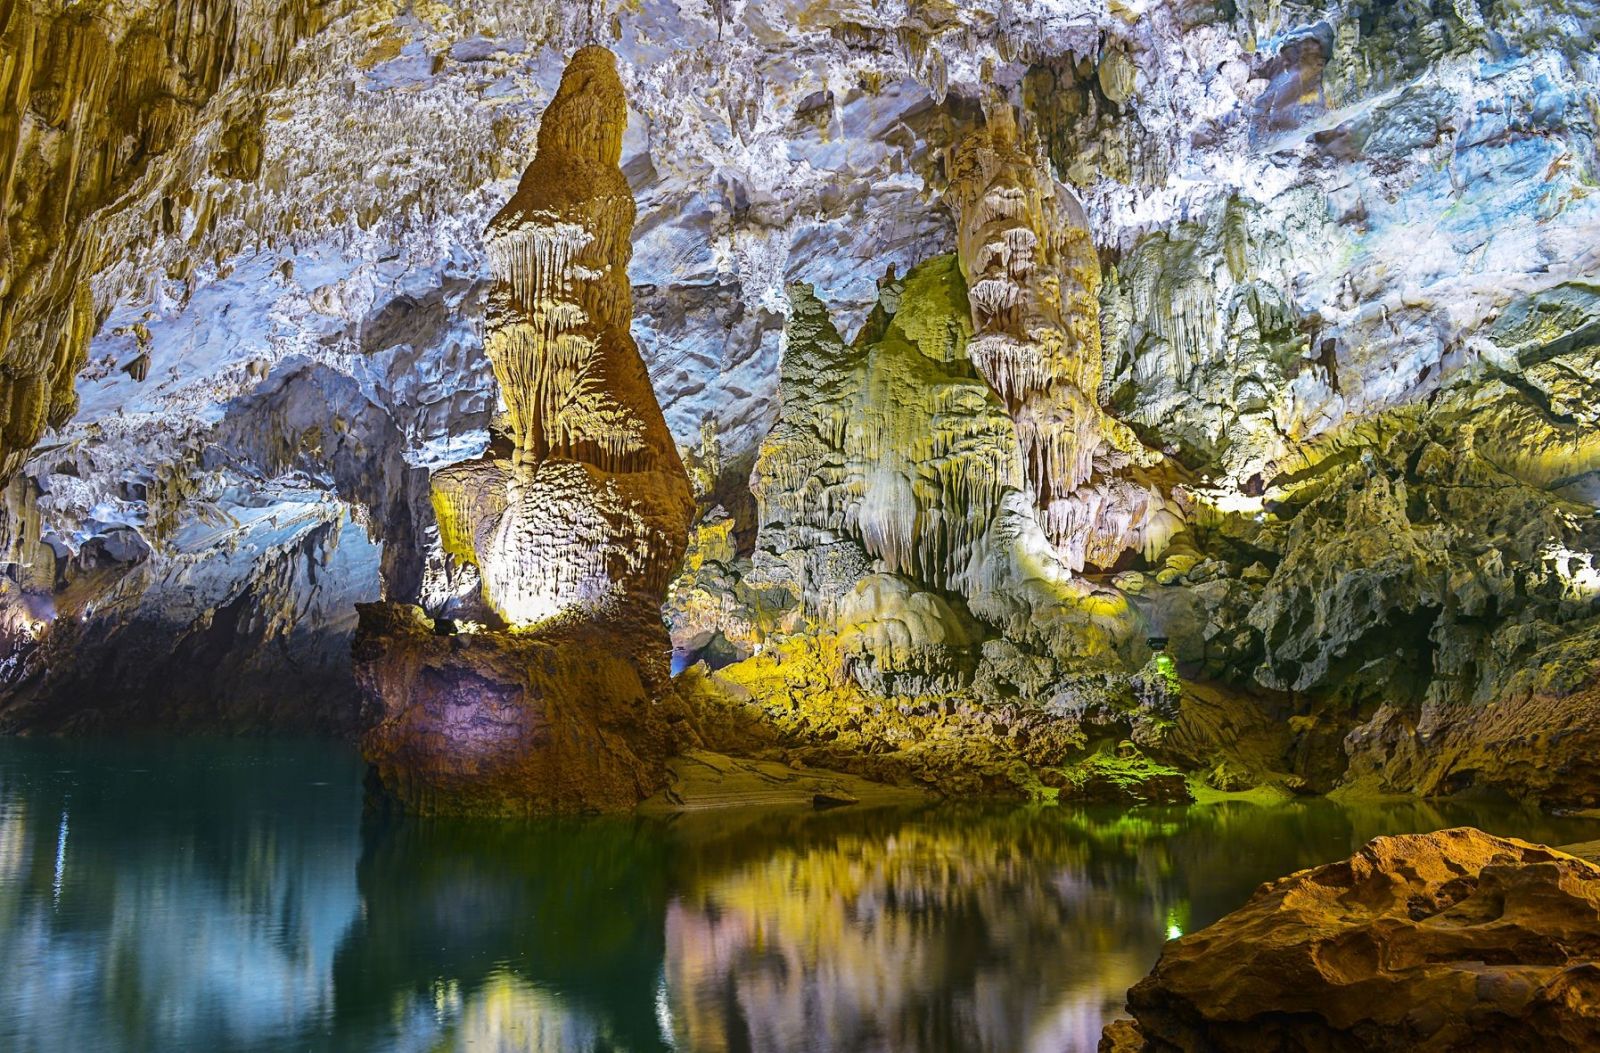  Vườn quốc gia Phong Nha Kẻ Bàng thường được coi là hệ thống hang động rộng lớn nhất thế giới